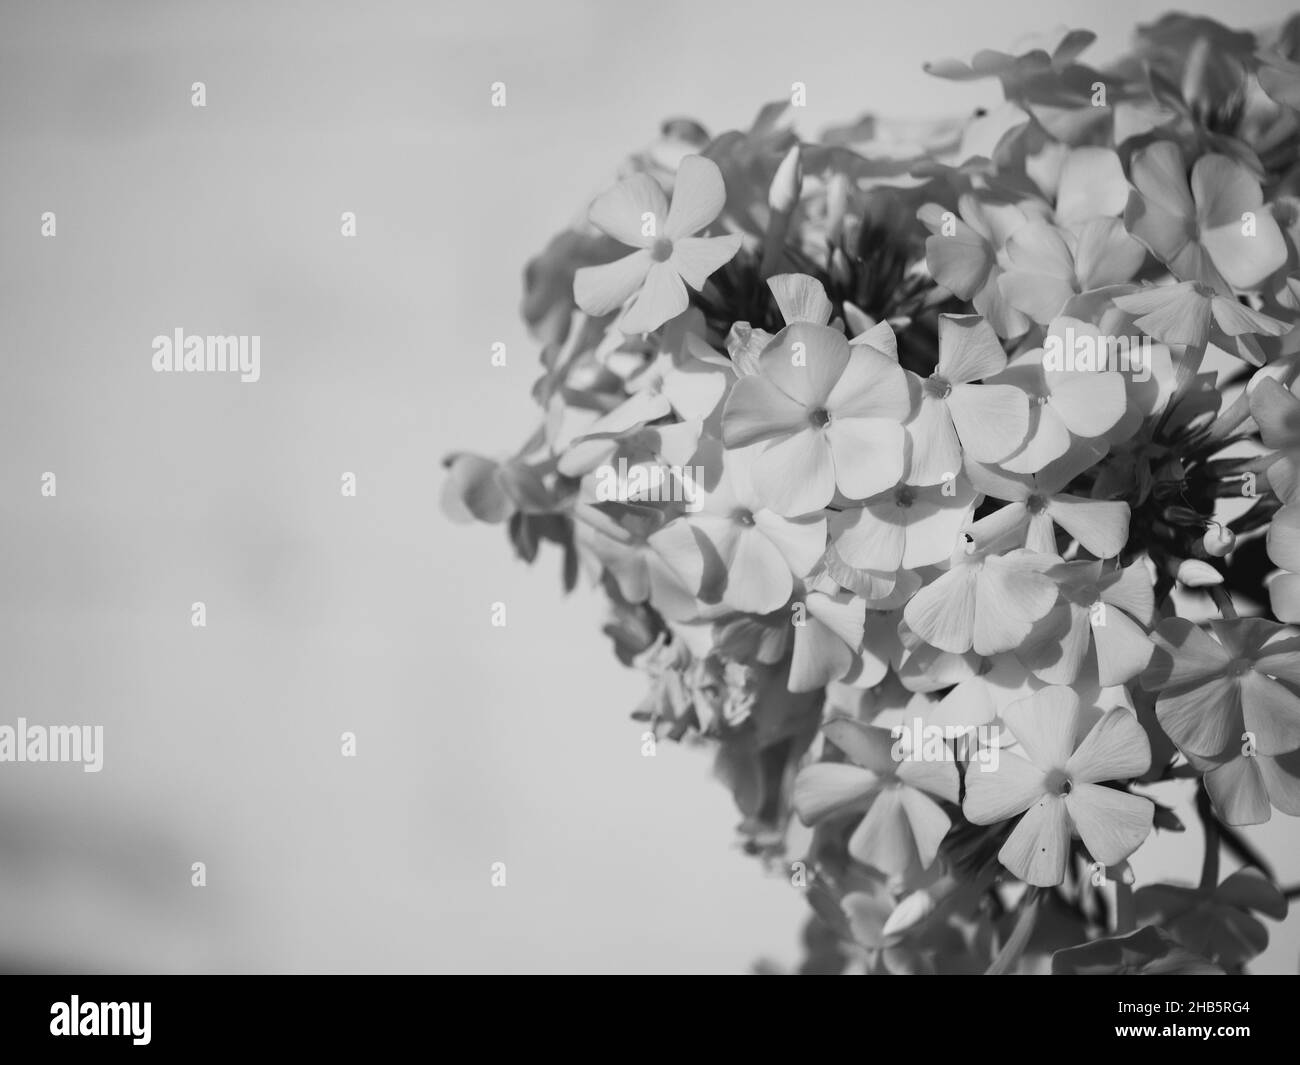 Ein Blütenstand von weißen Phlox-Blüten, ein Nahaufnahme-Bild. Wunderschöne weiße Blumen. Stockfoto